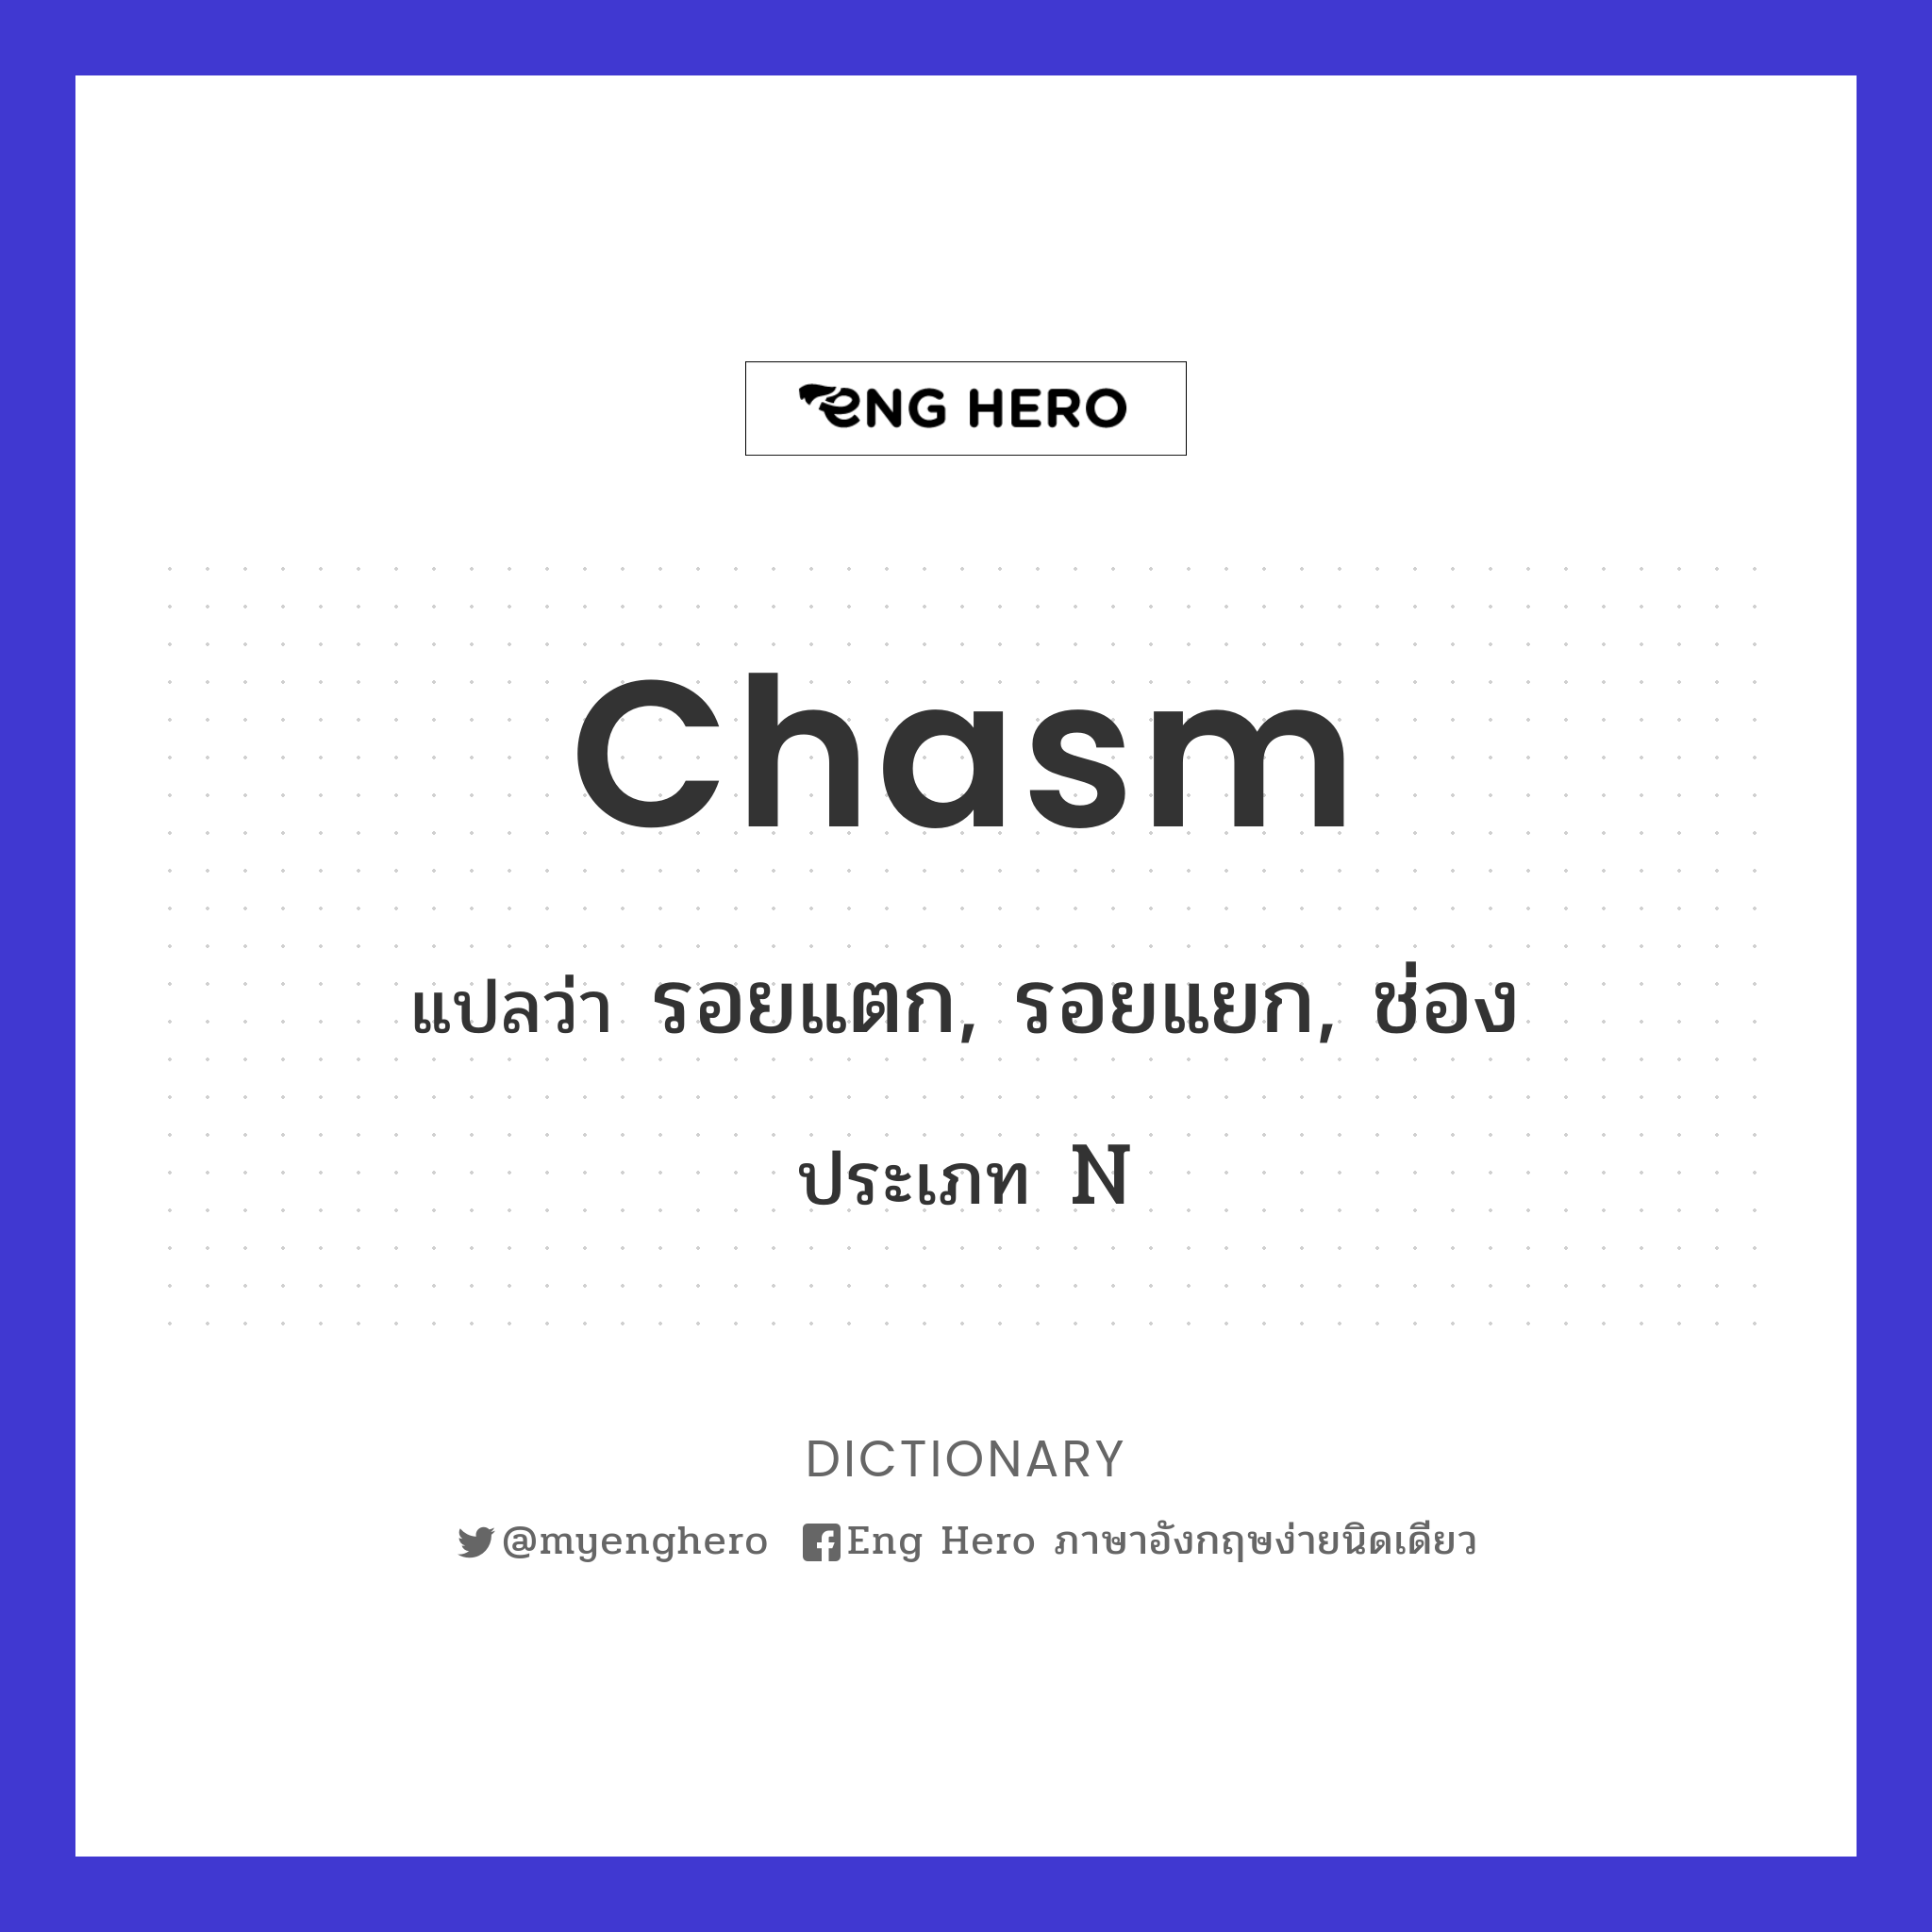 chasm